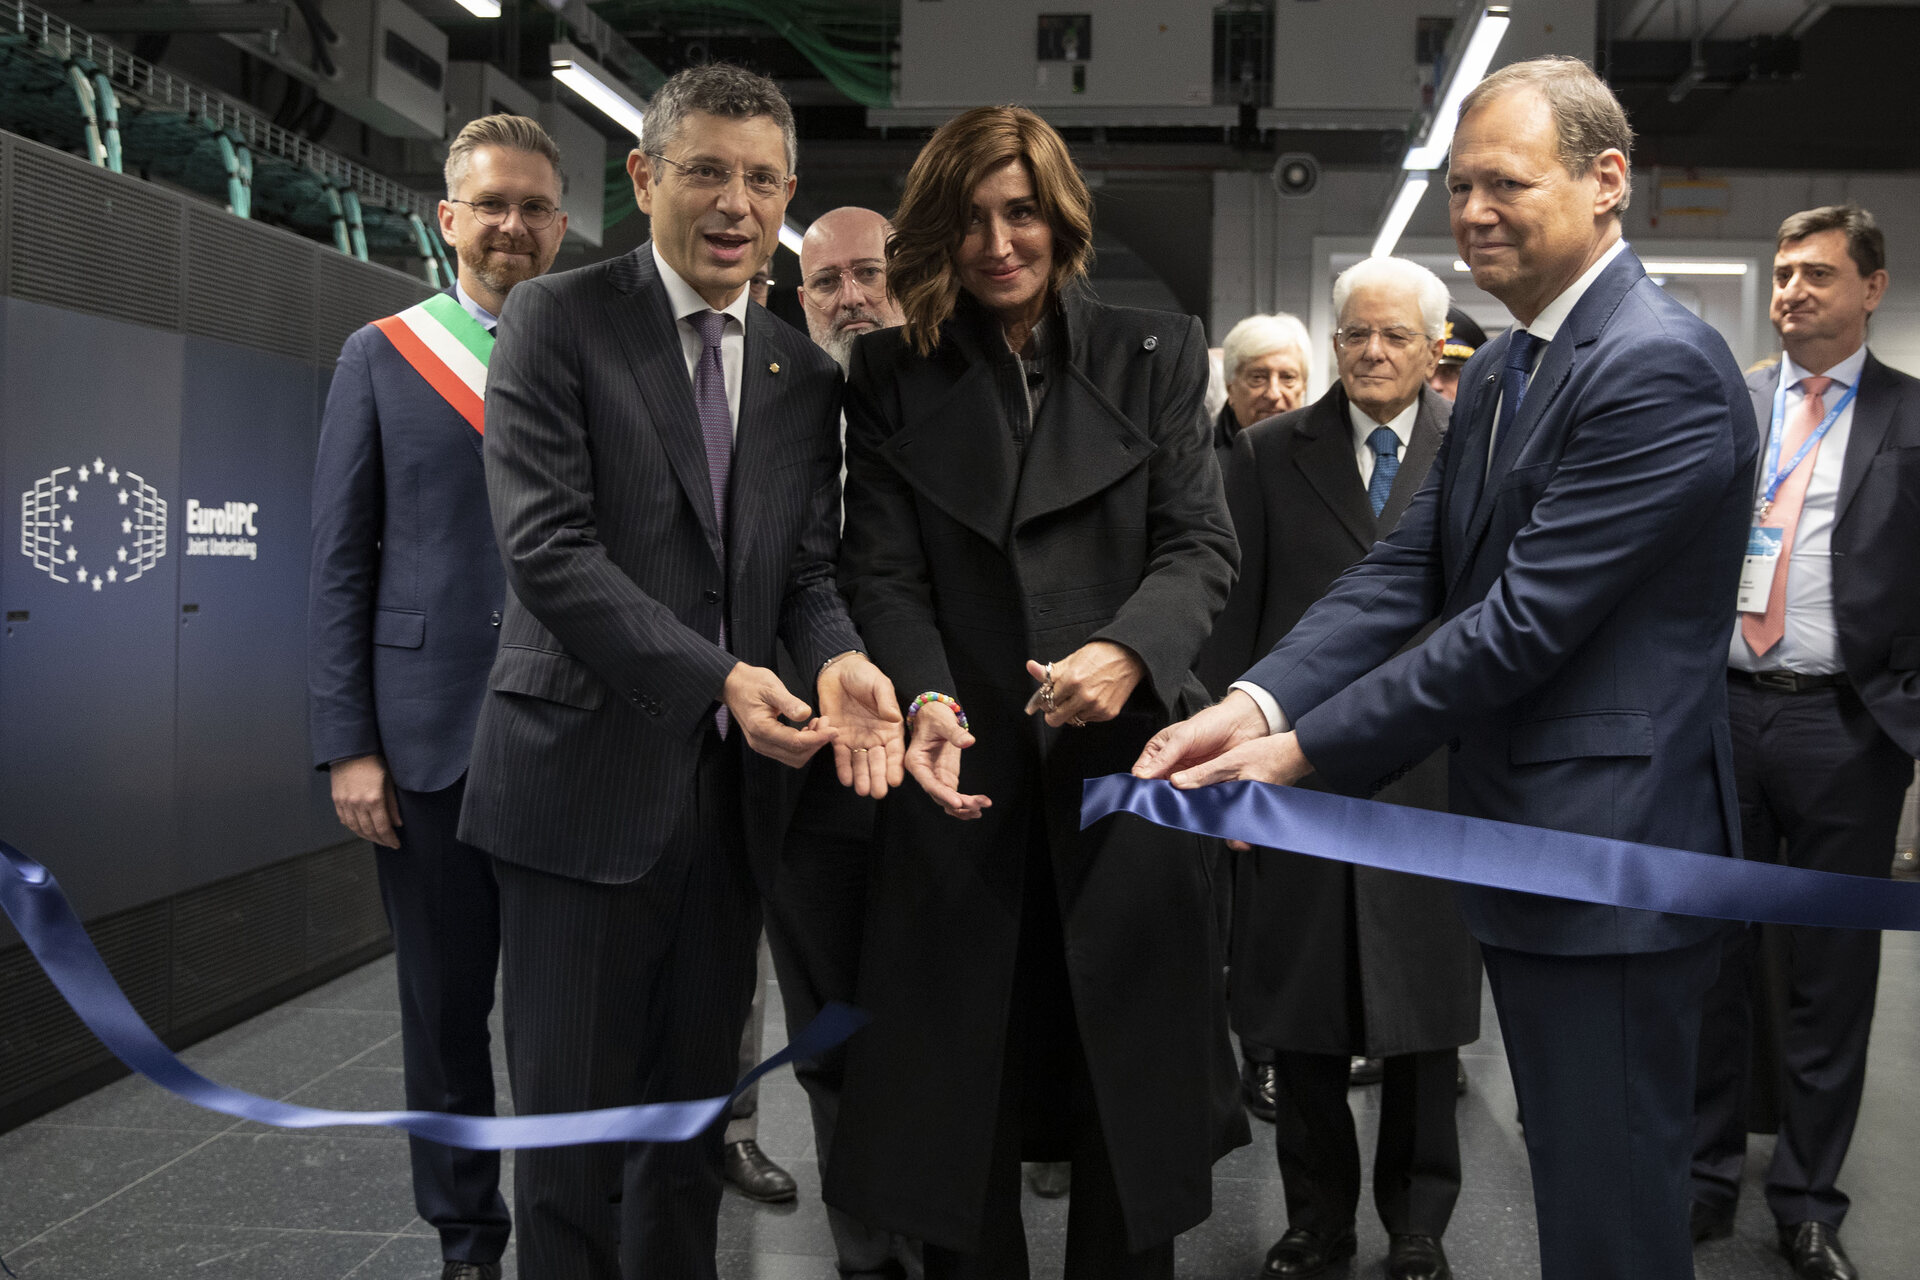 พิธีเปิดตัวซูเปอร์คอมพิวเตอร์ Leonardo ในโบโลญญาเมื่อวันที่ 24 พฤศจิกายน 2022